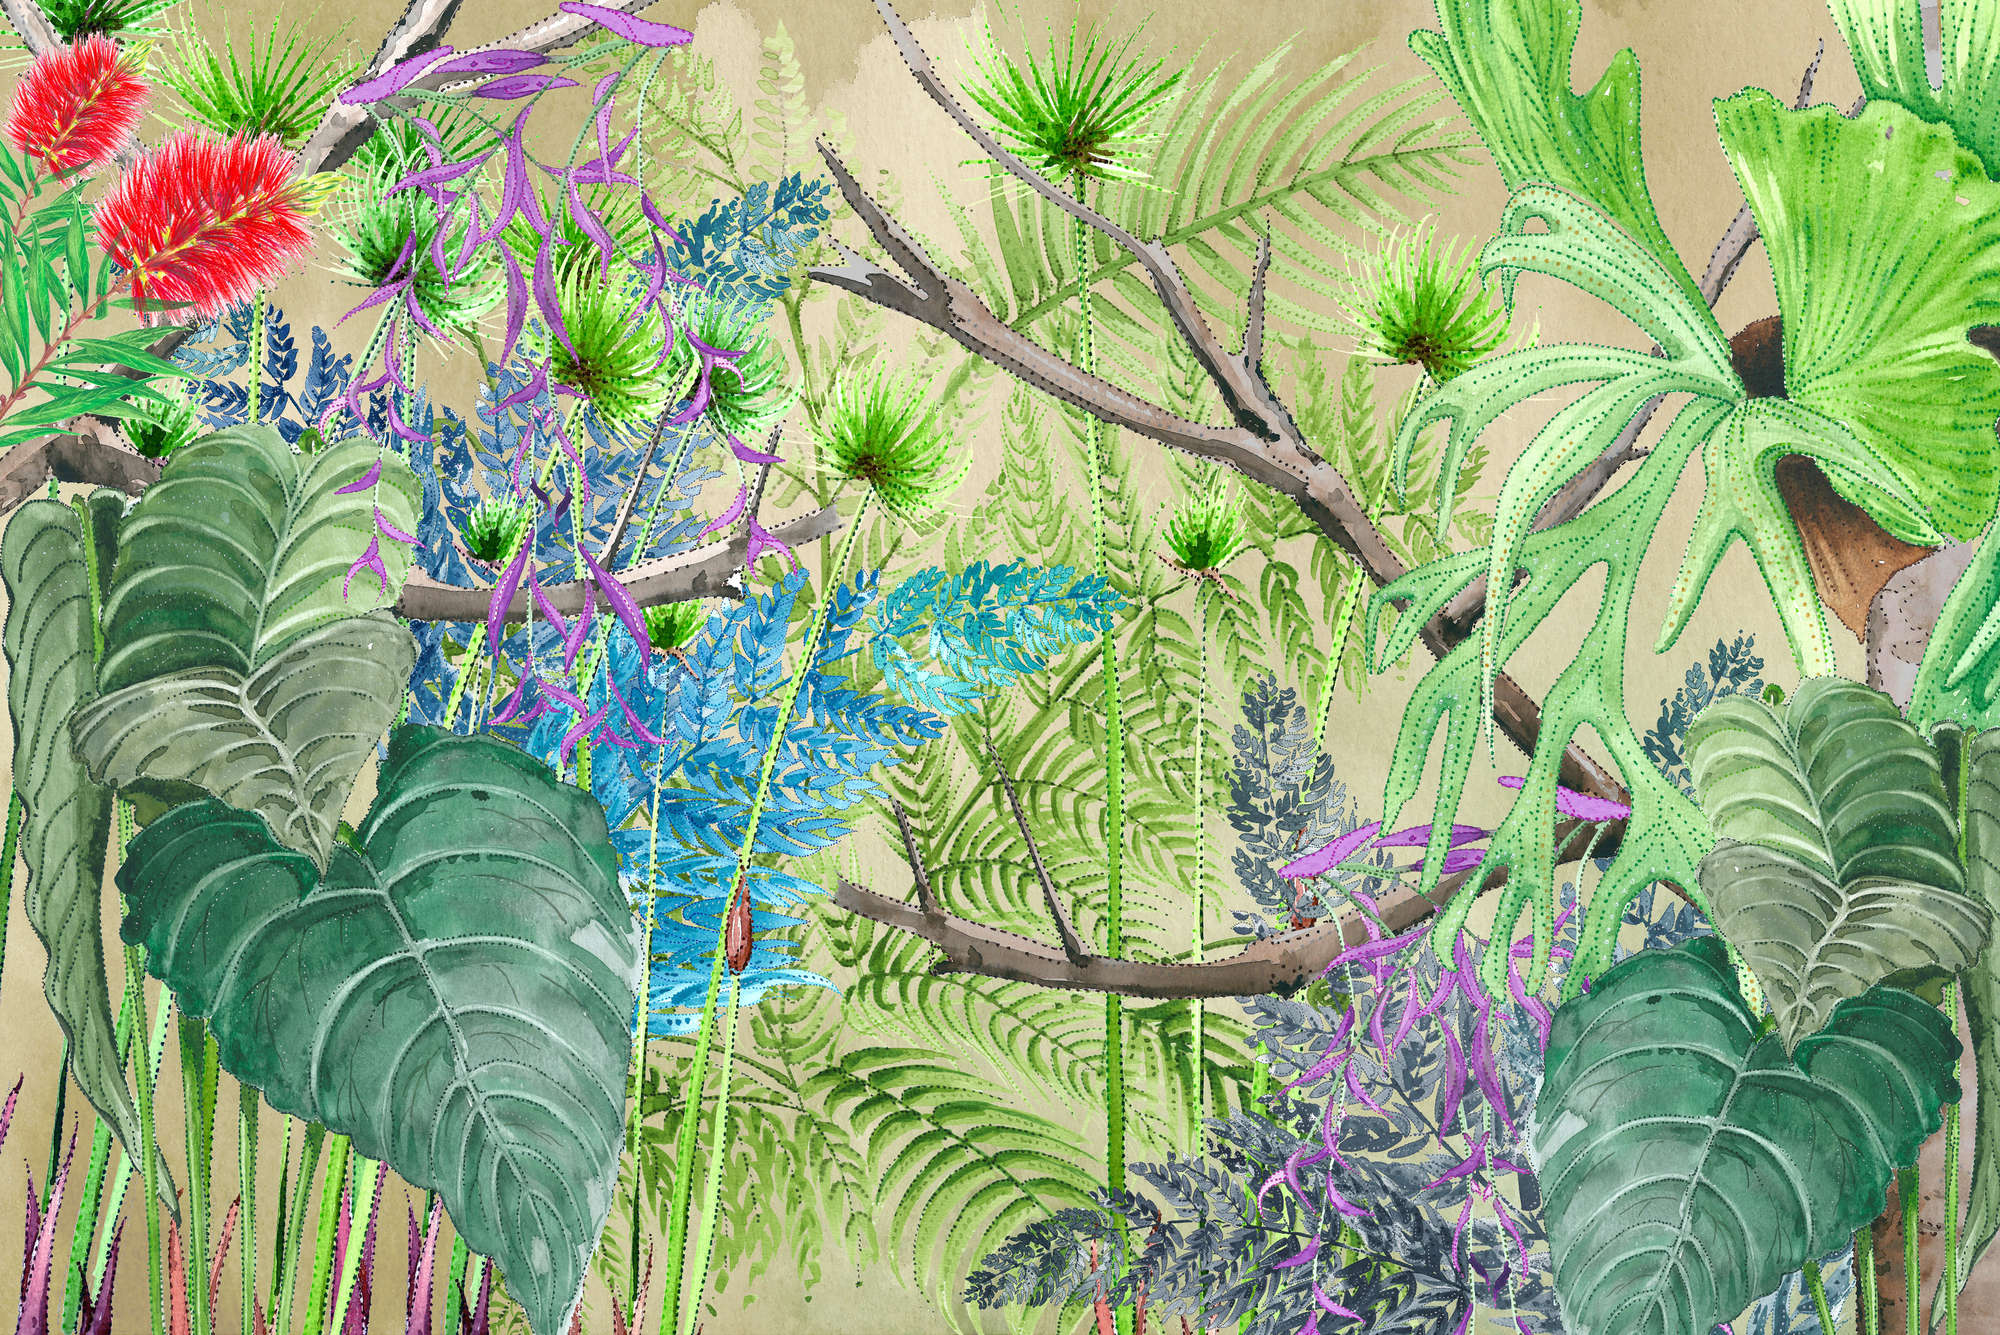             Papier peint jungle avec fleurs bleues et vertes sur intissé lisse nacré
        